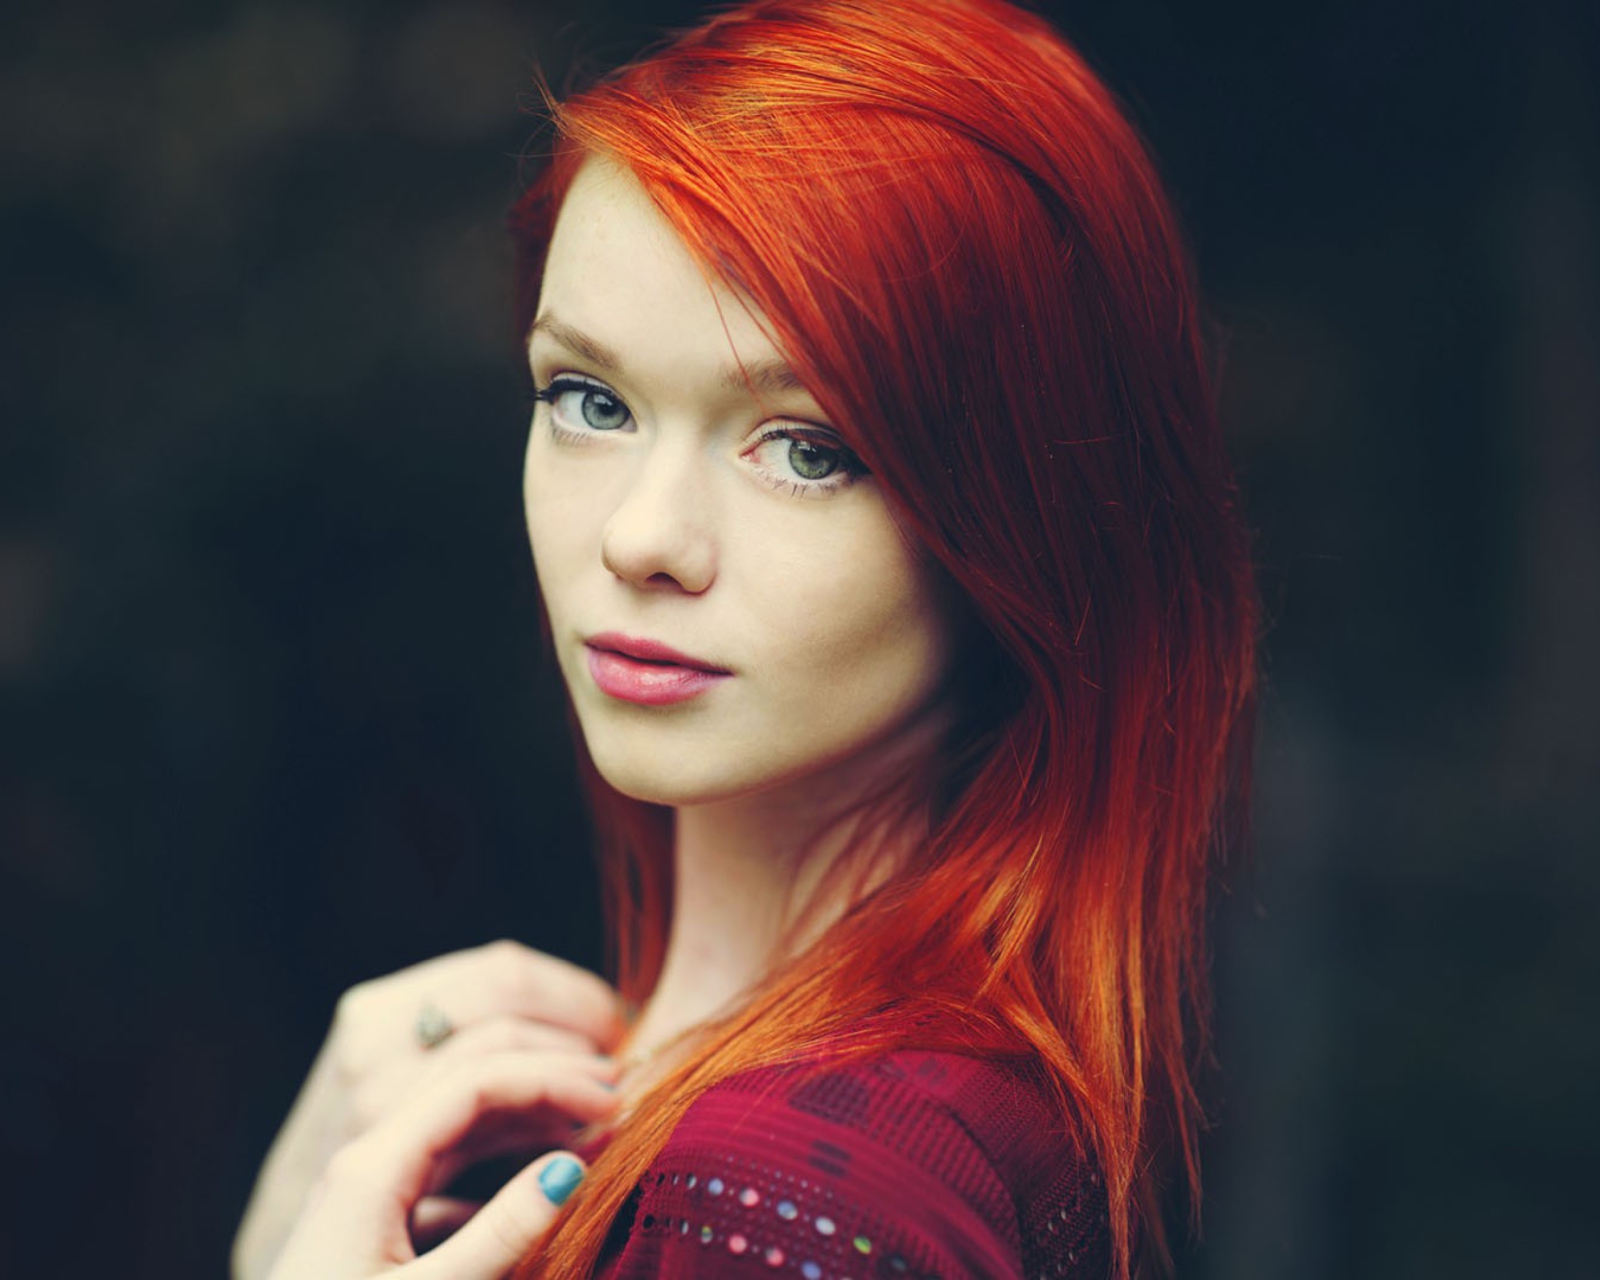 Das Redhead Girl Wallpaper 1600x1280